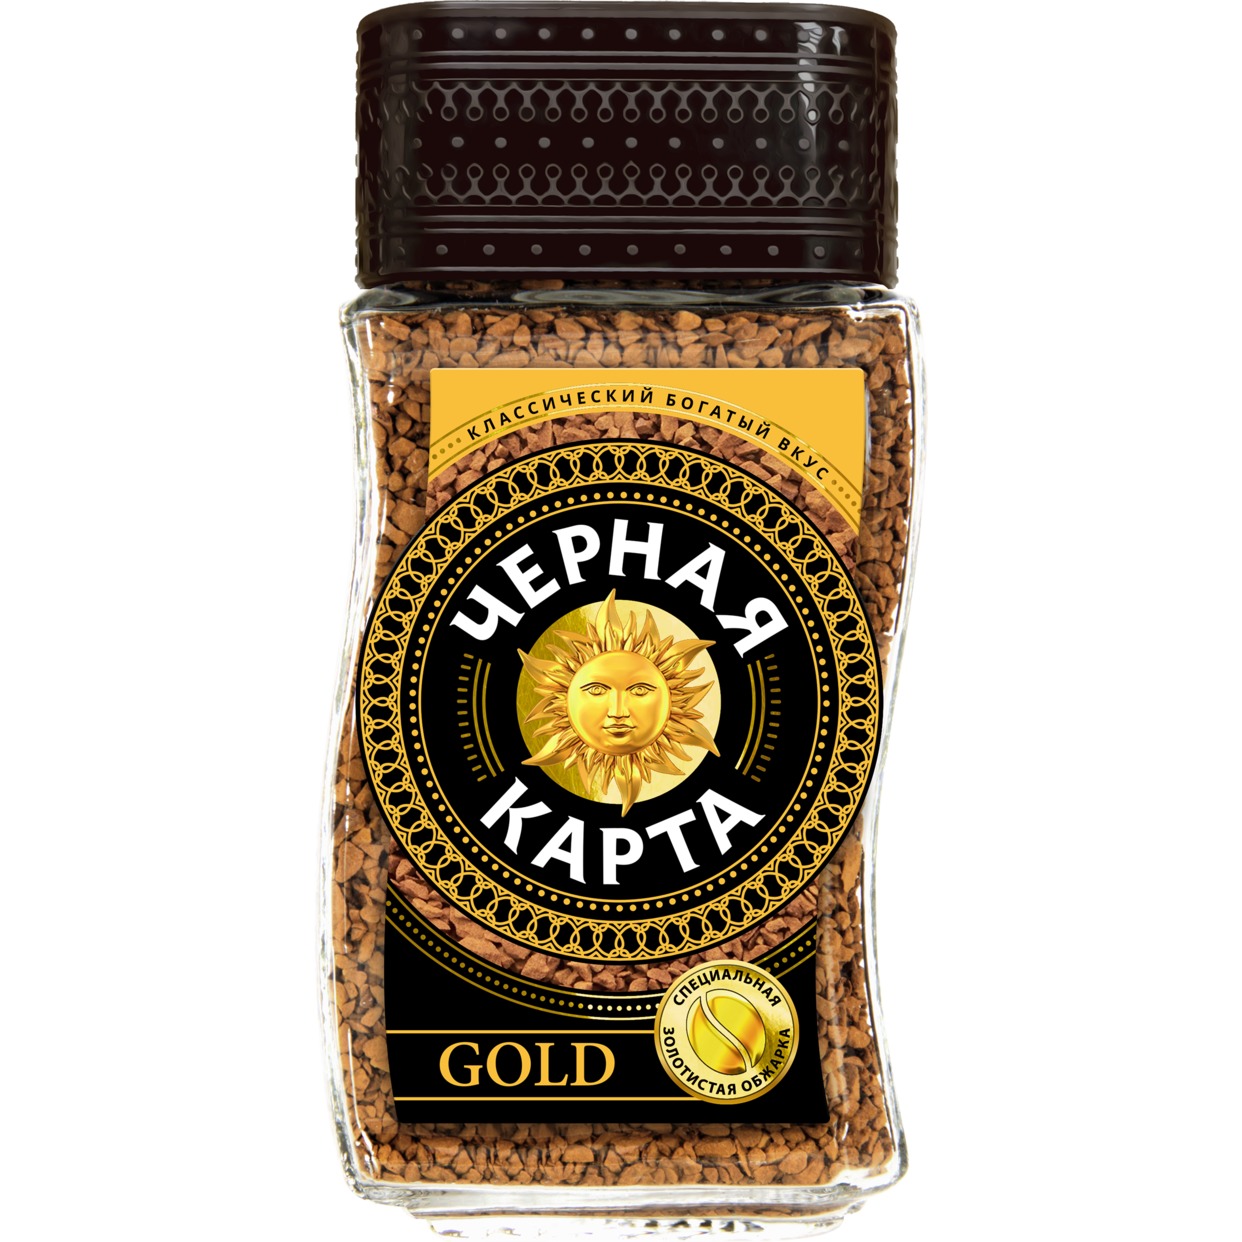 Кофе Черная Карта Gold натуральный растворимый сублимированный 190 г по акции в Пятерочке